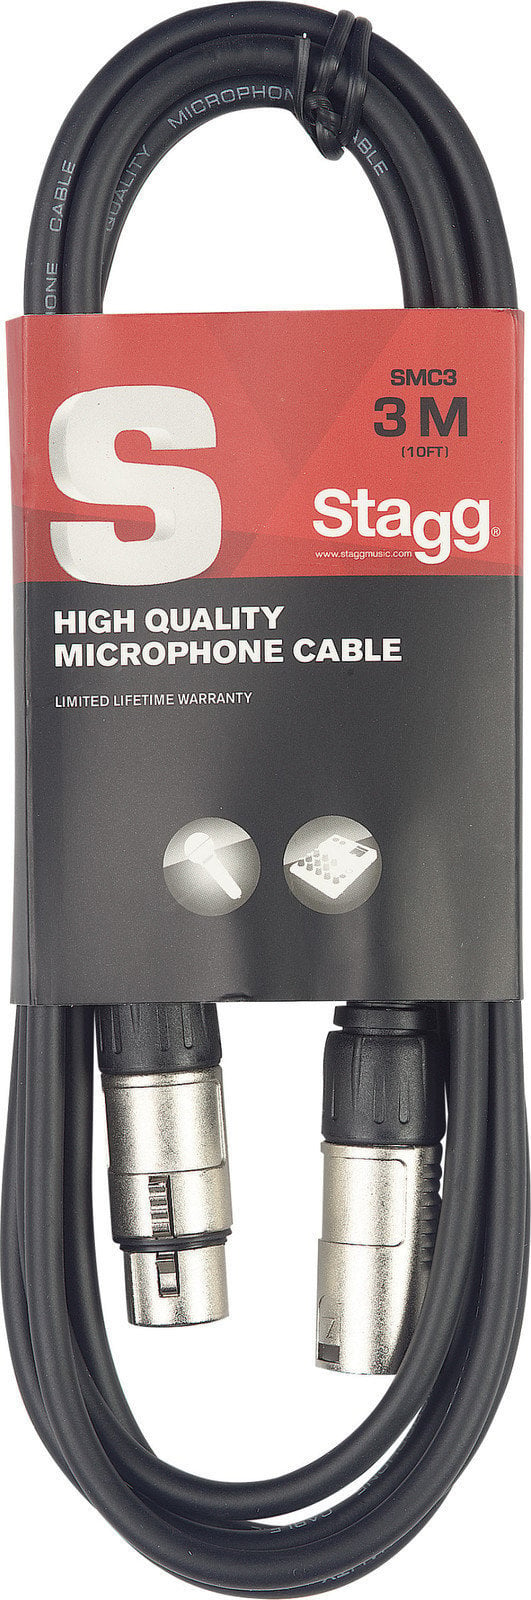 Câble pour microphone Stagg SMC3 Noir 3 m